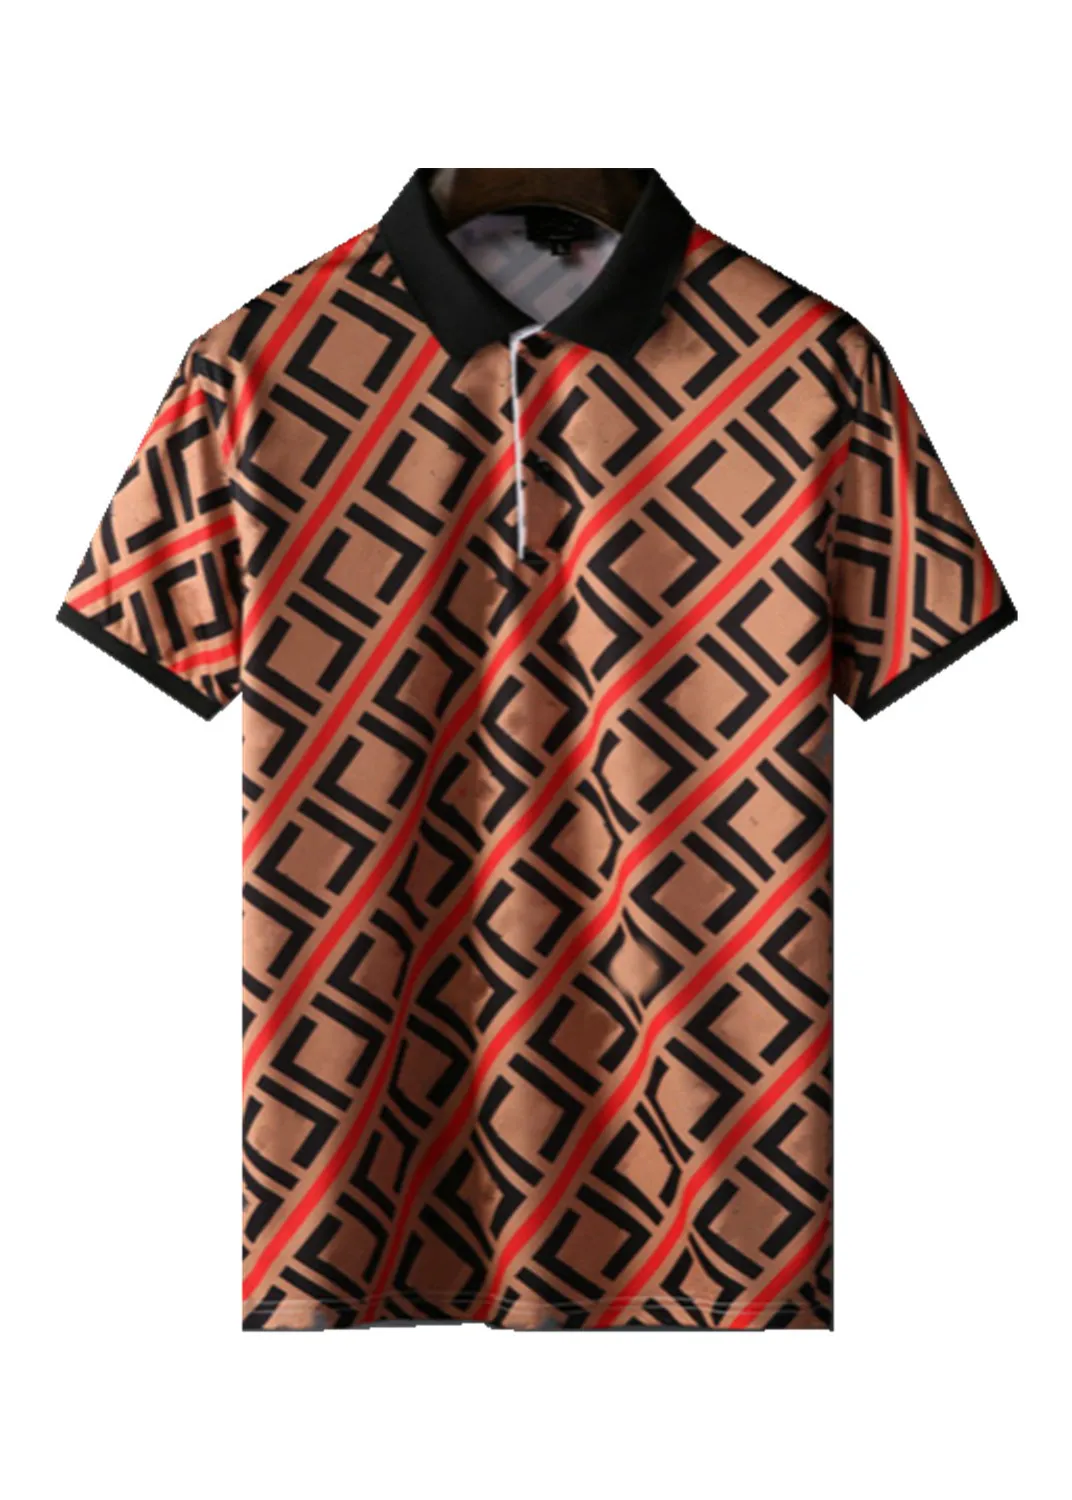 2022Luxury Повседневная мужская футболка с дышащим поло Дизайнерская одежда Футболка с коротким рукавом 100% хлопок высокого качества оптом черно-белый размер M-3XL # ZO35